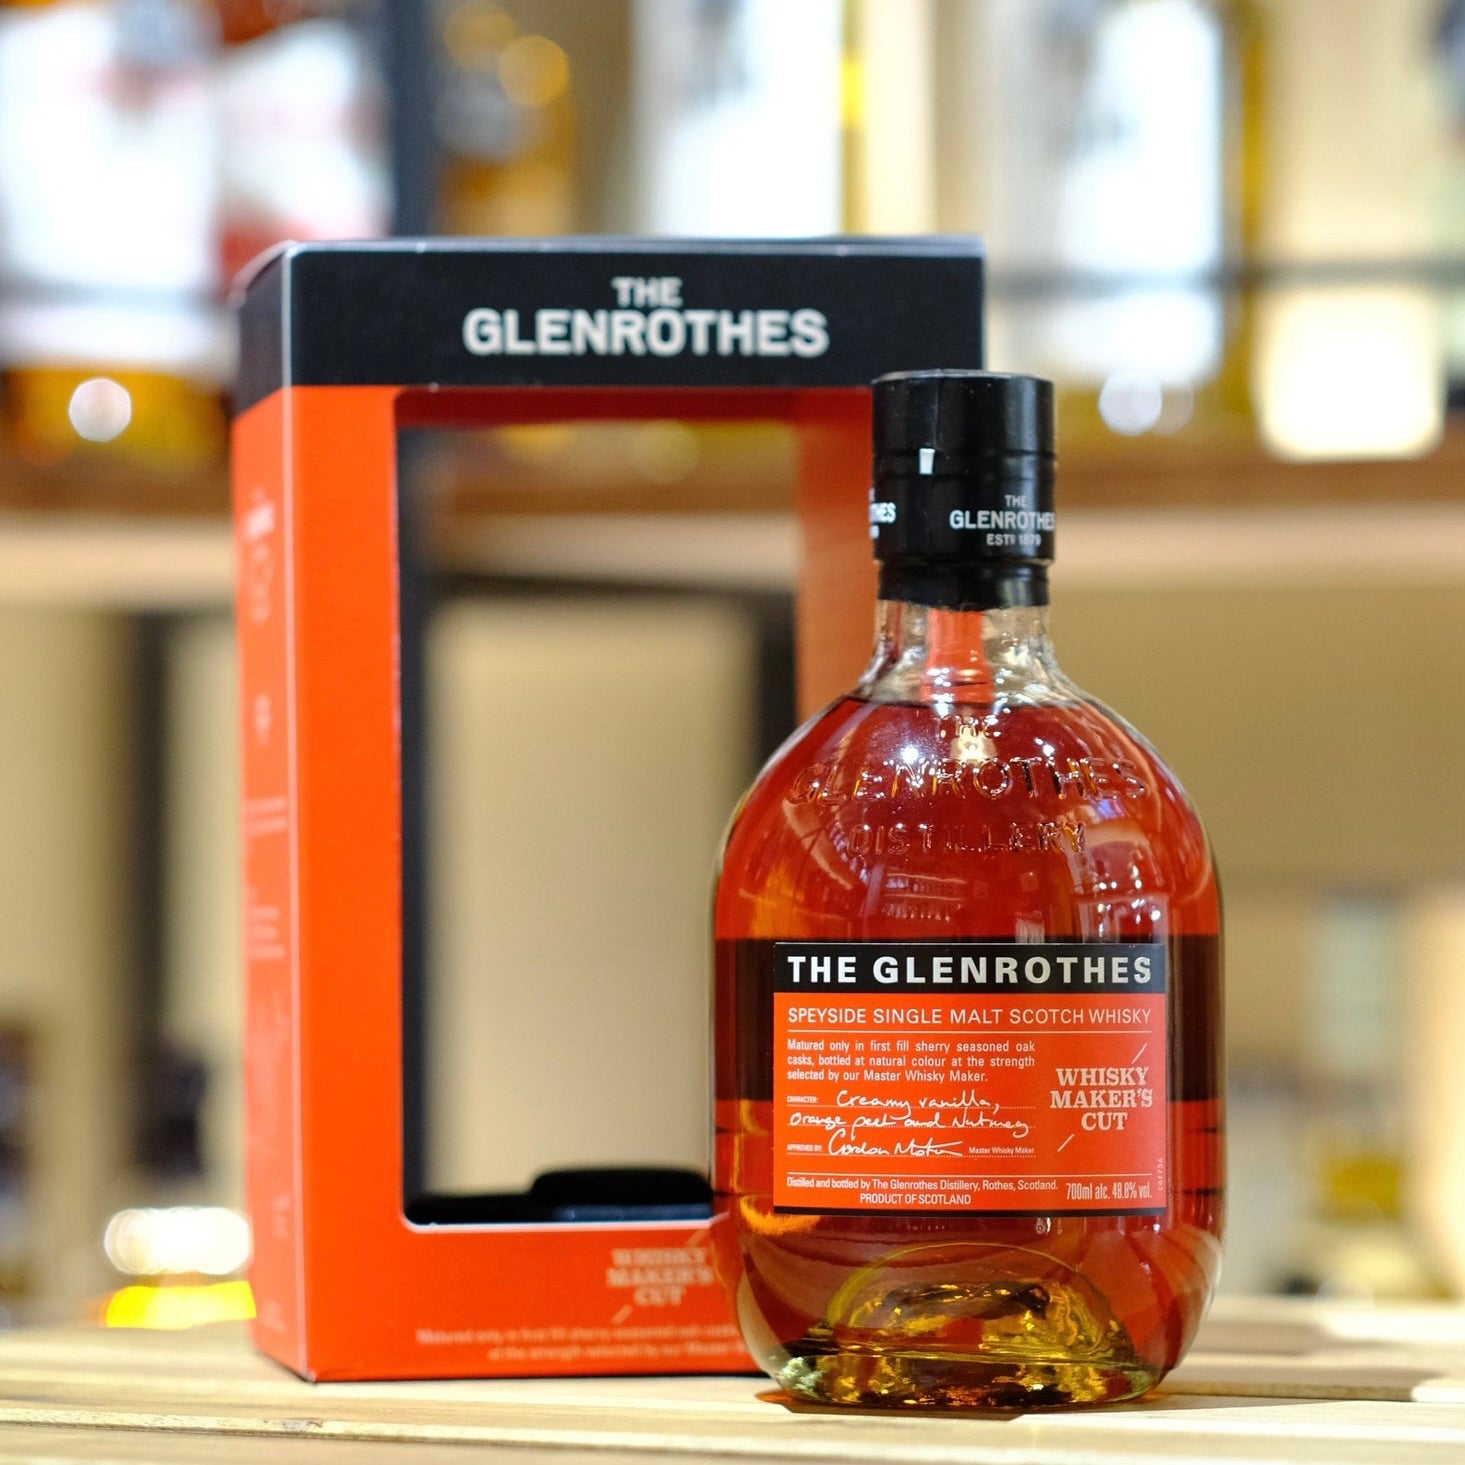 Glenrothes Whisky Maker's Cut Single Malt Scotch Whisky